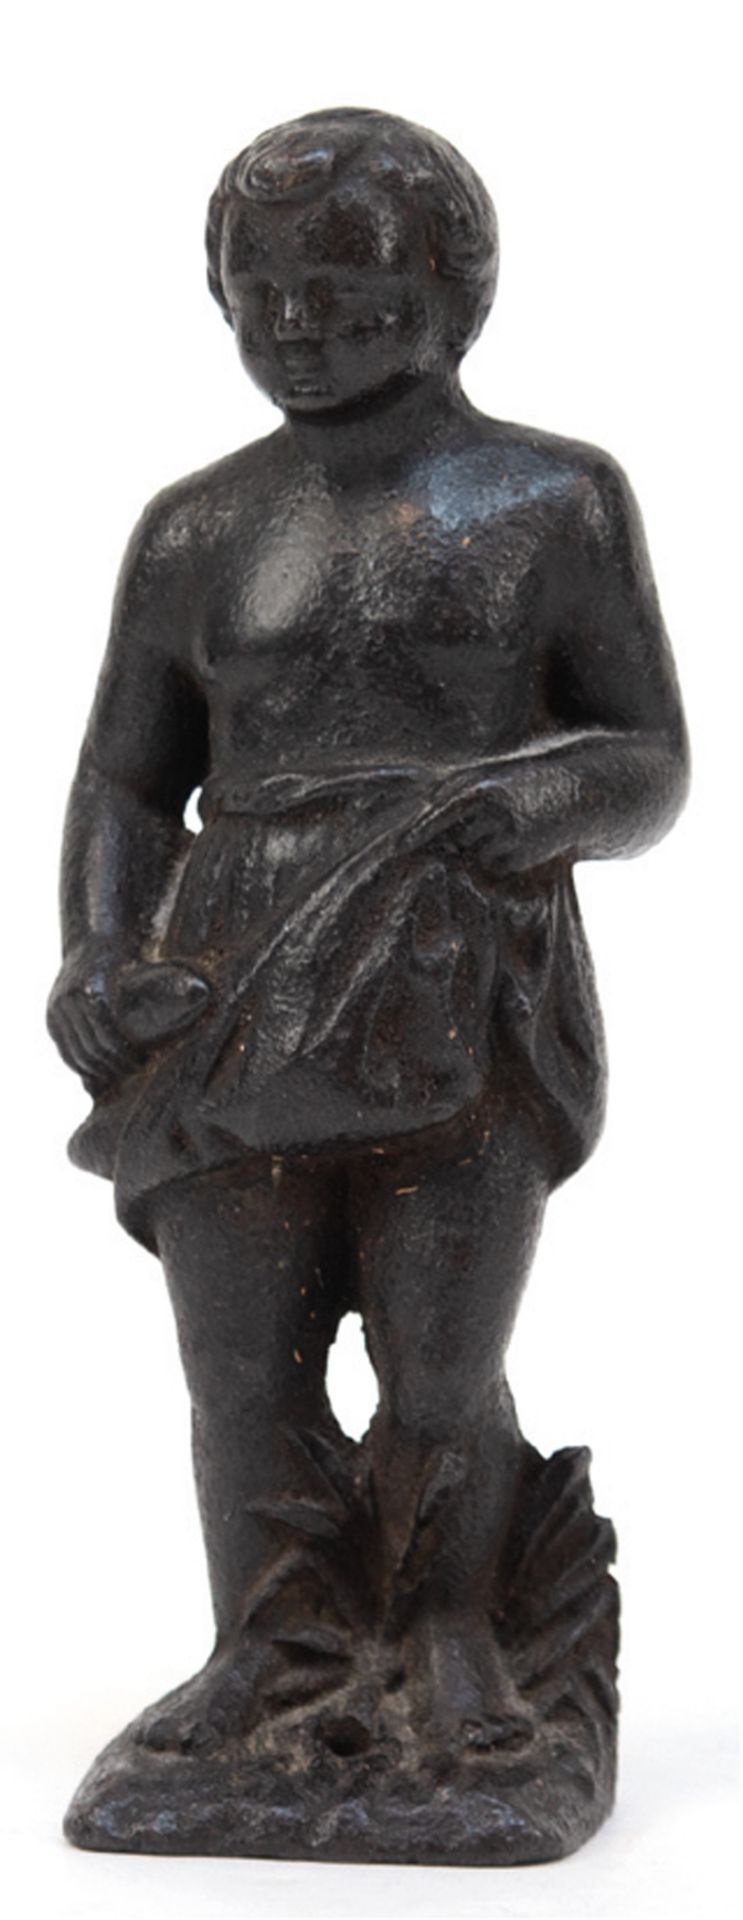 Figur "Mann mit Lendenschurz", 18./ 19. Jh., Eisenguß, Sockel mit Bohrung, H. 15,5 cm